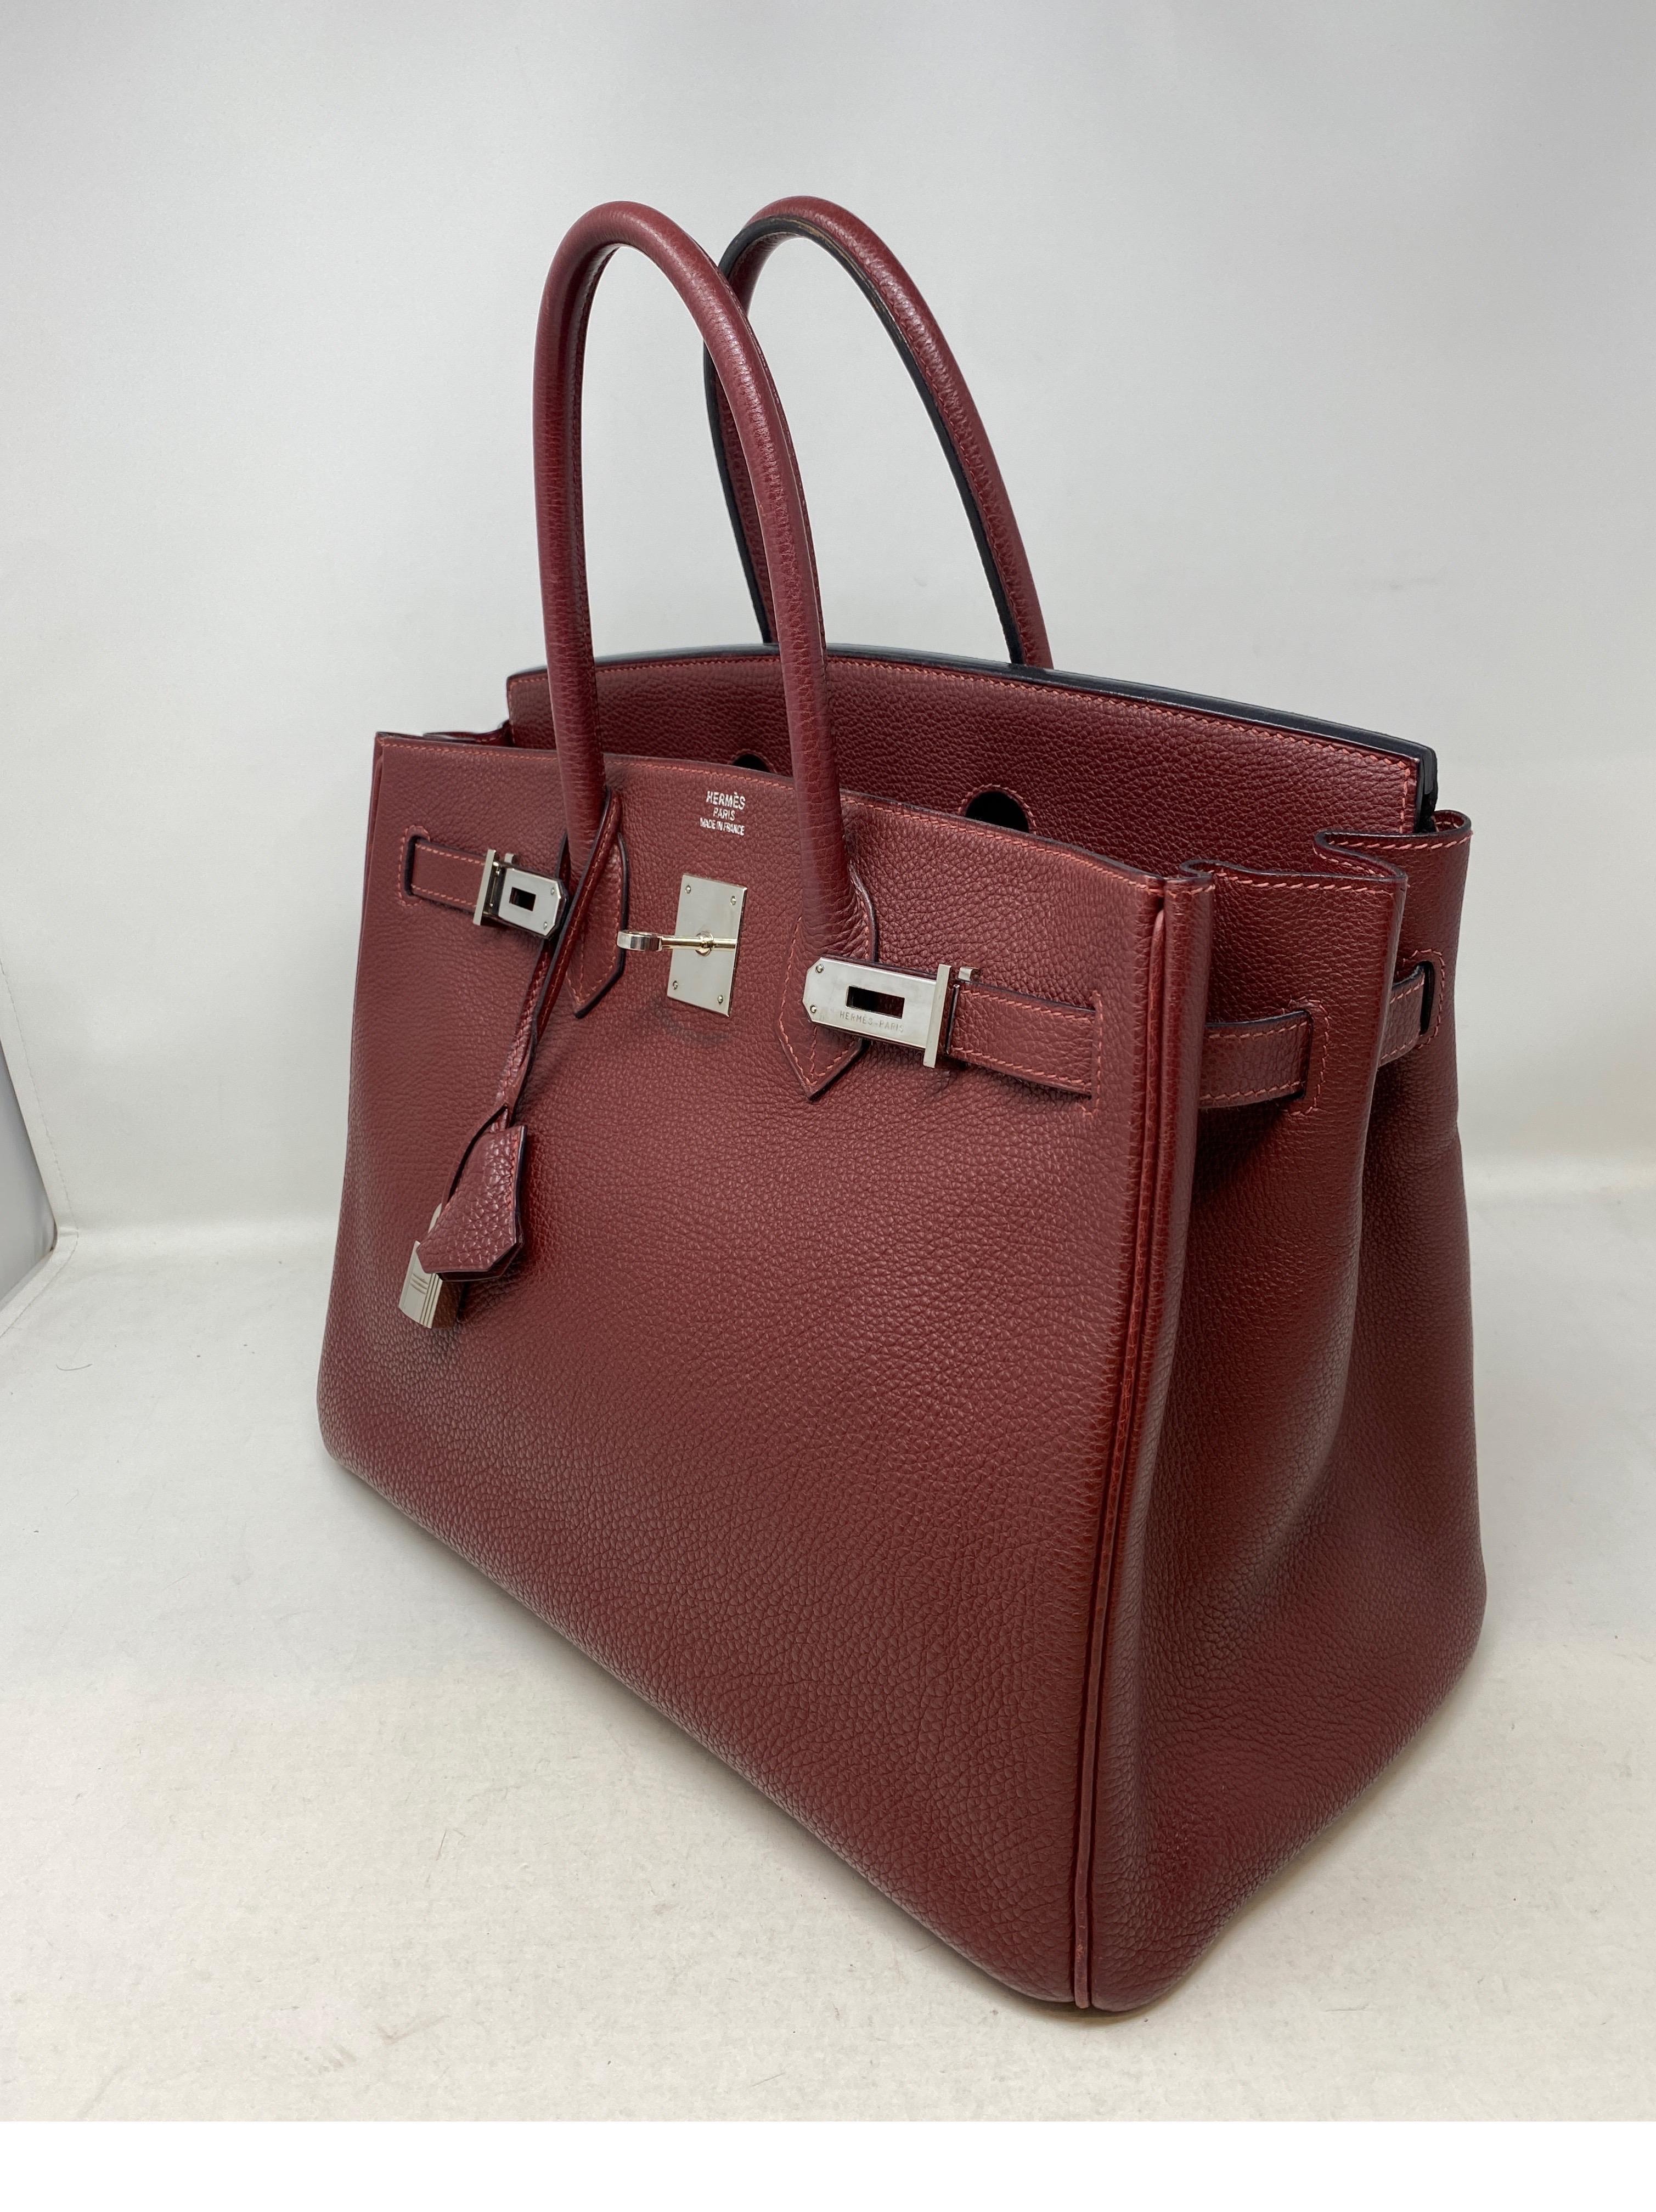 Women's or Men's Hermes Rouge Birkin 35 Bag